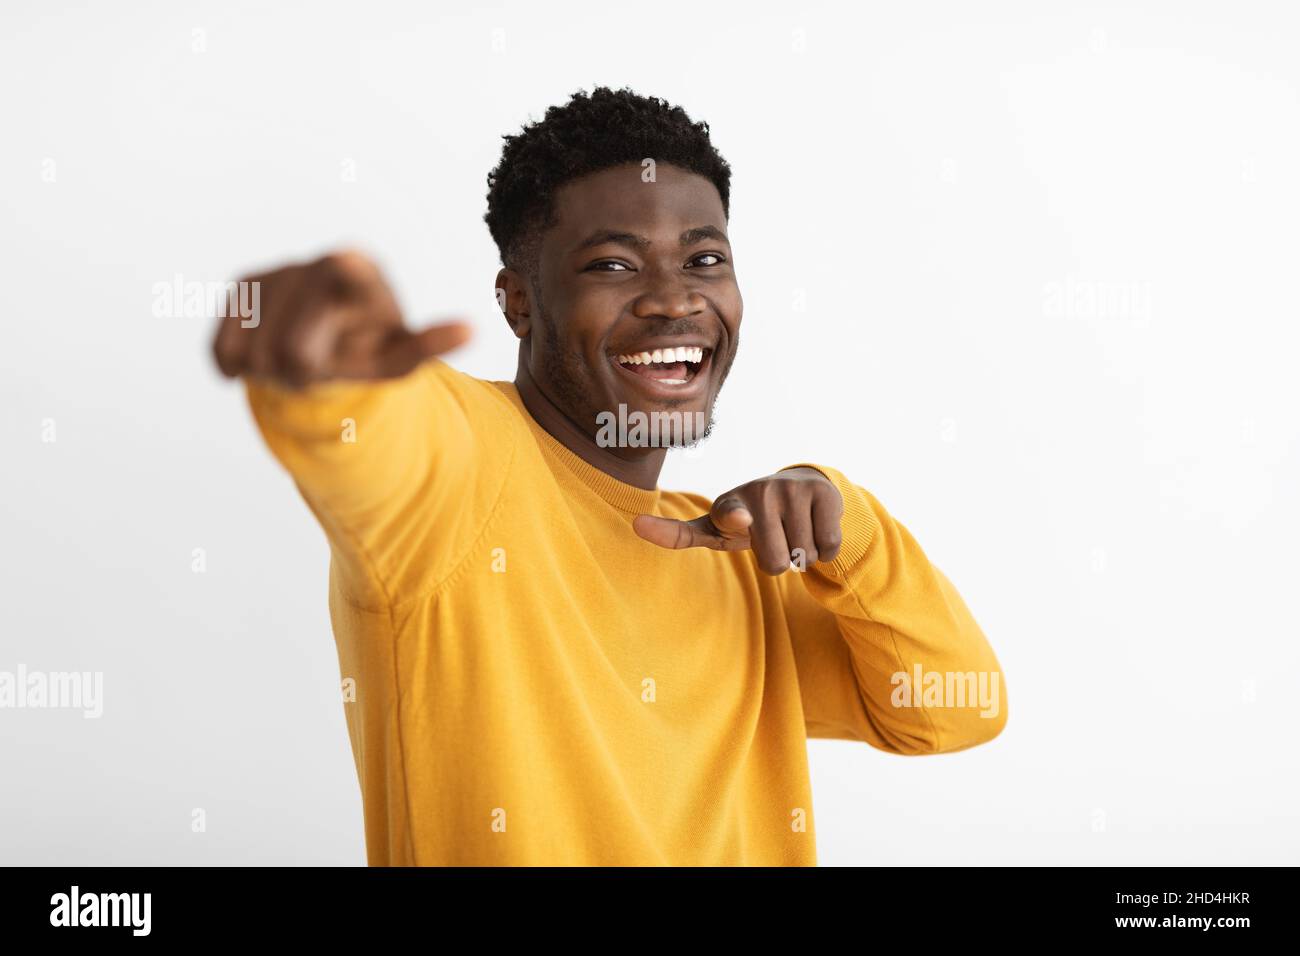 Drôle de gars afro-américains gesturant sur fond blanc Banque D'Images